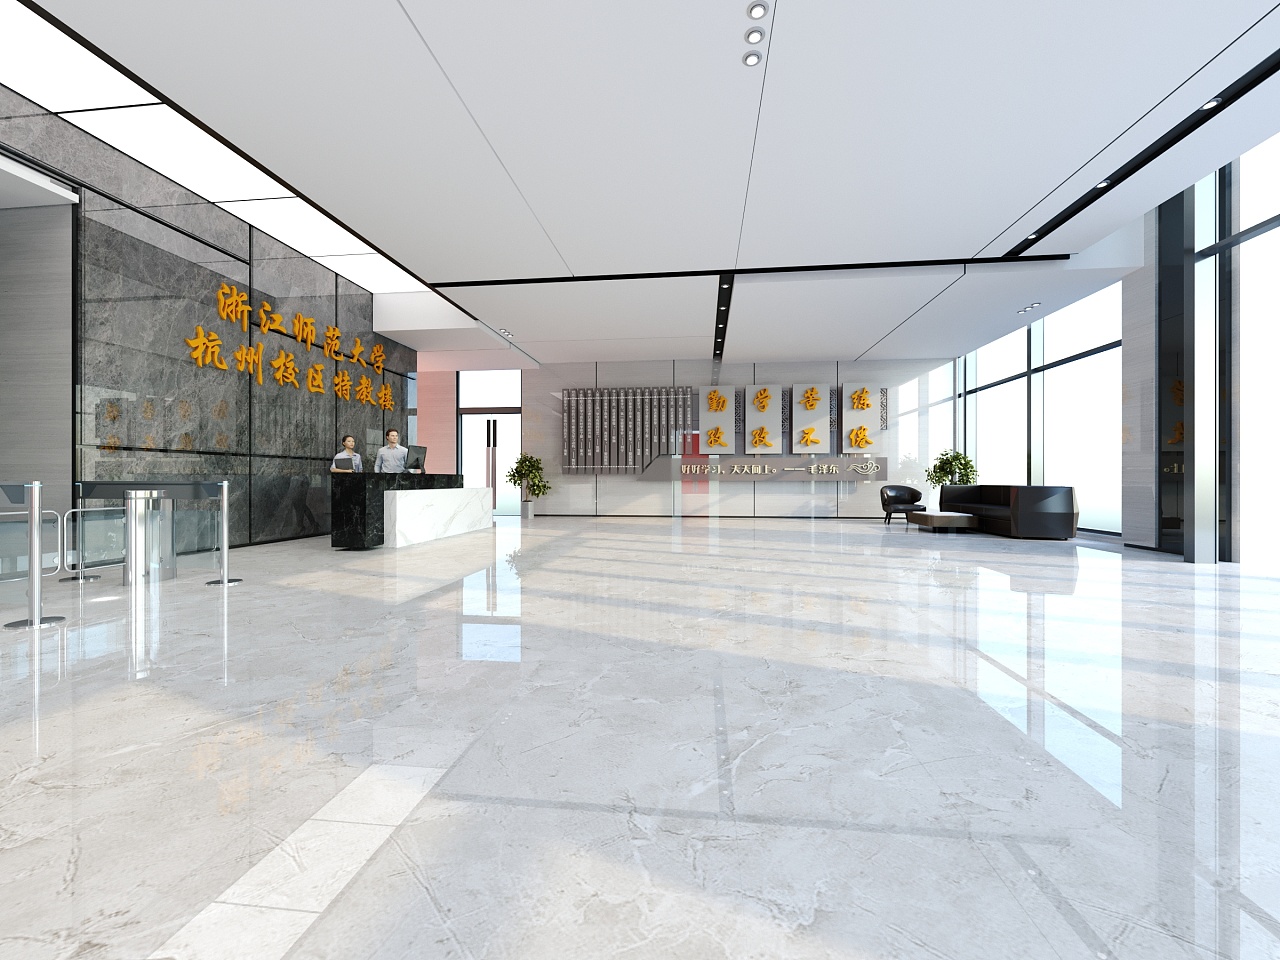 现代办公大堂，大厅门厅 3d模型下载-【集简空间】「每日更新」